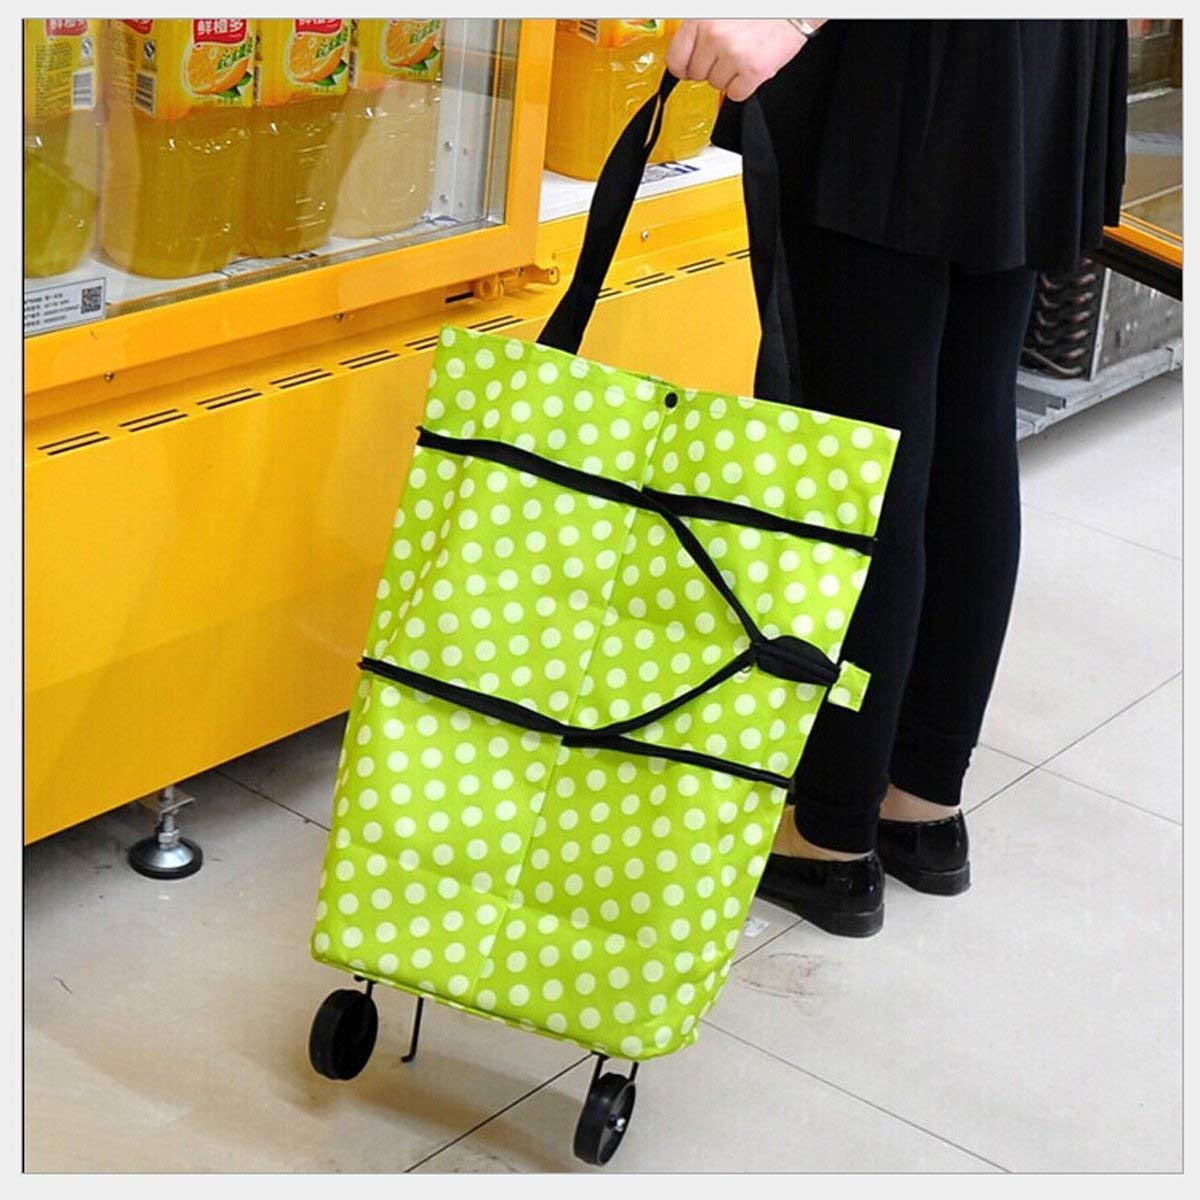 Shopping Trolley Wheel Folding Travel Luggage Bag